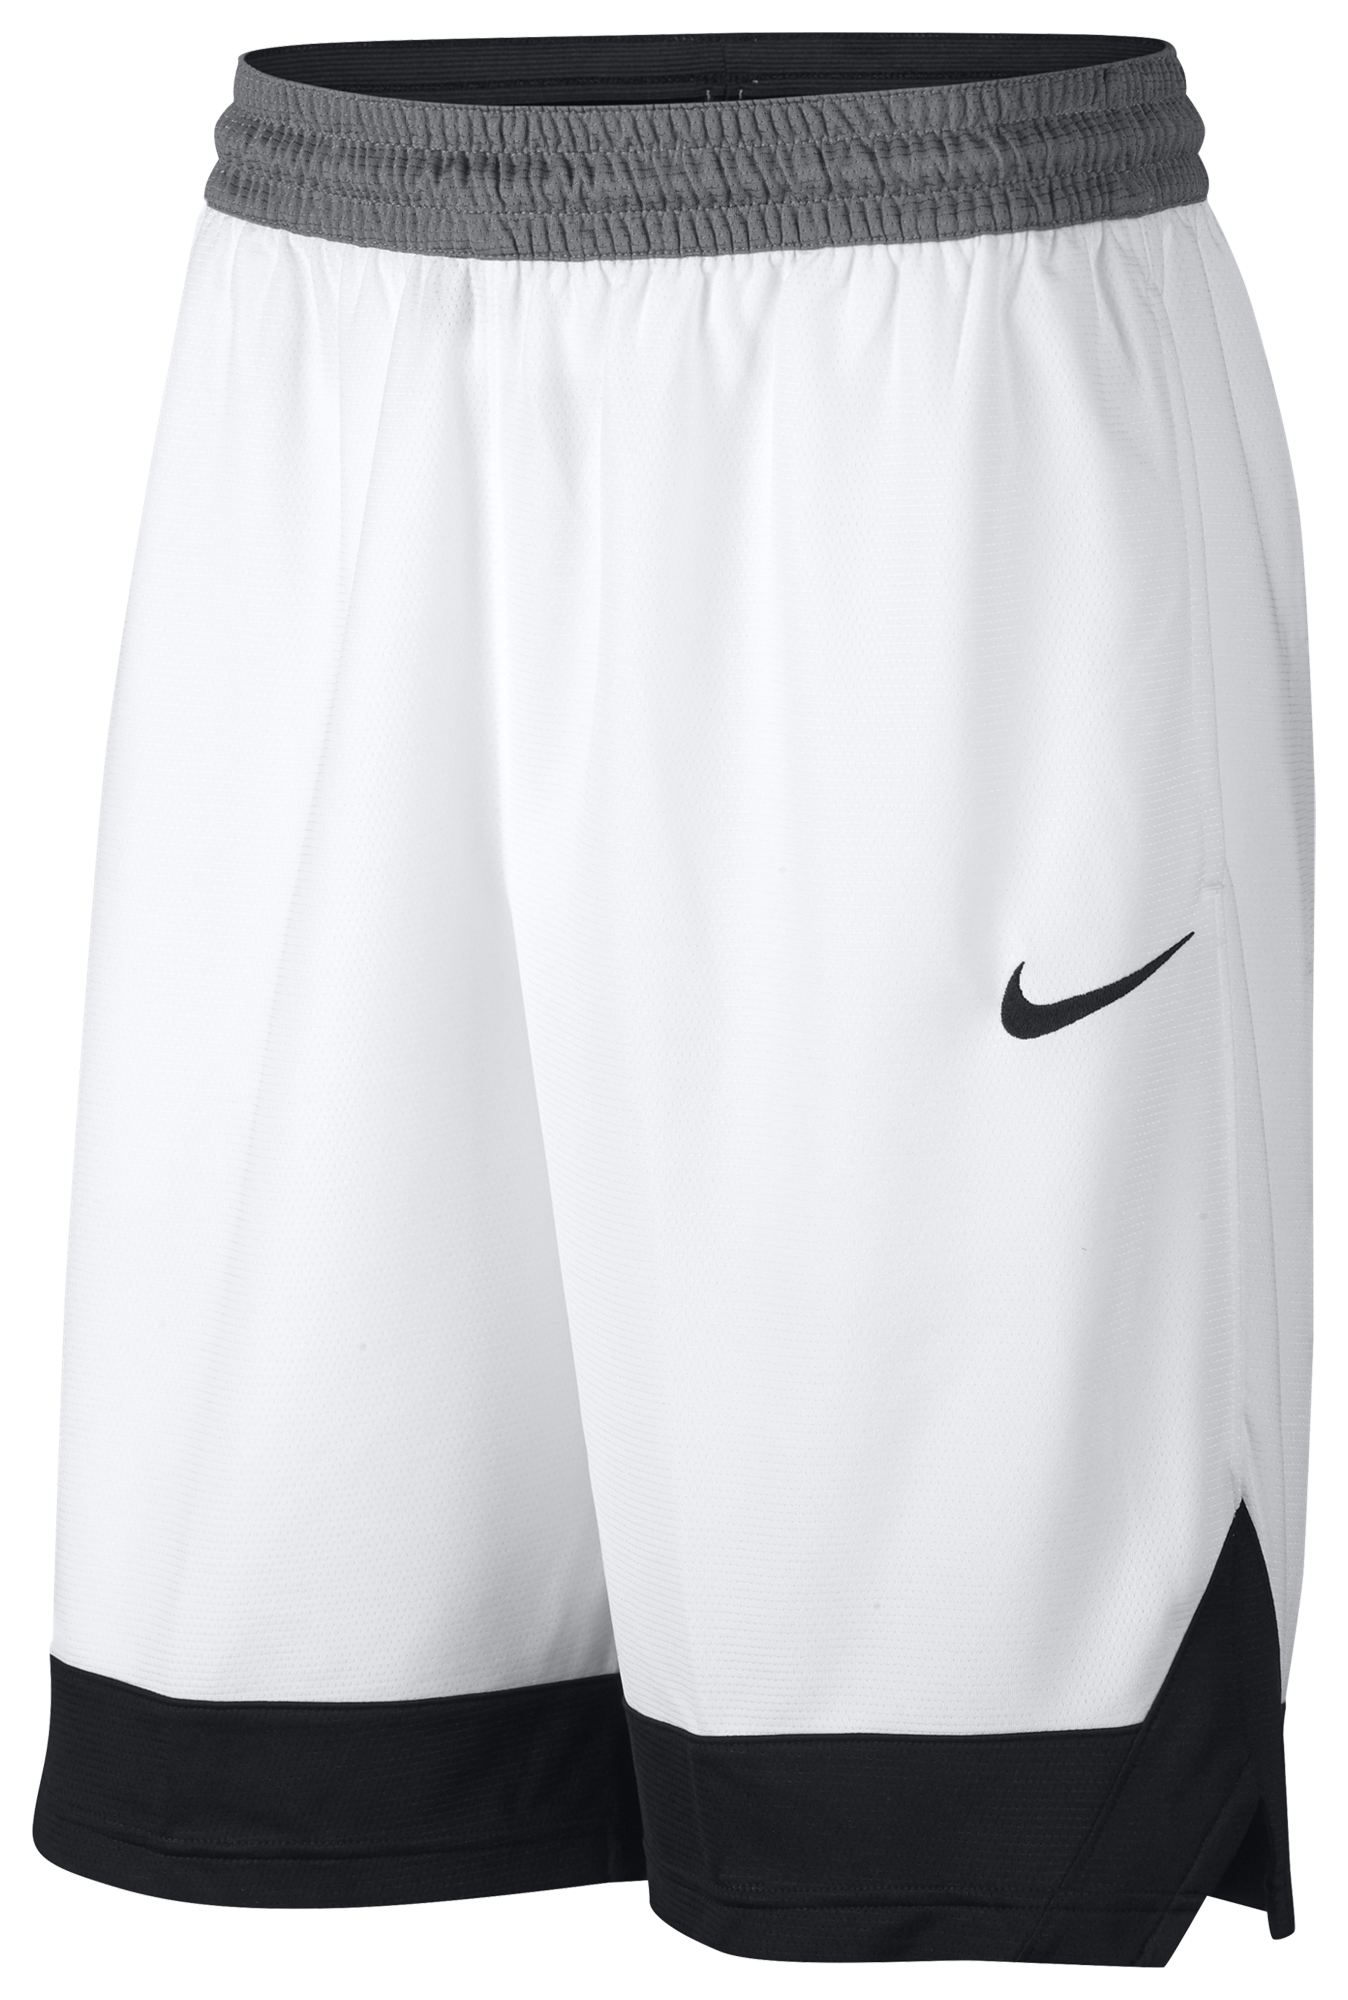 foot locker basketball shorts